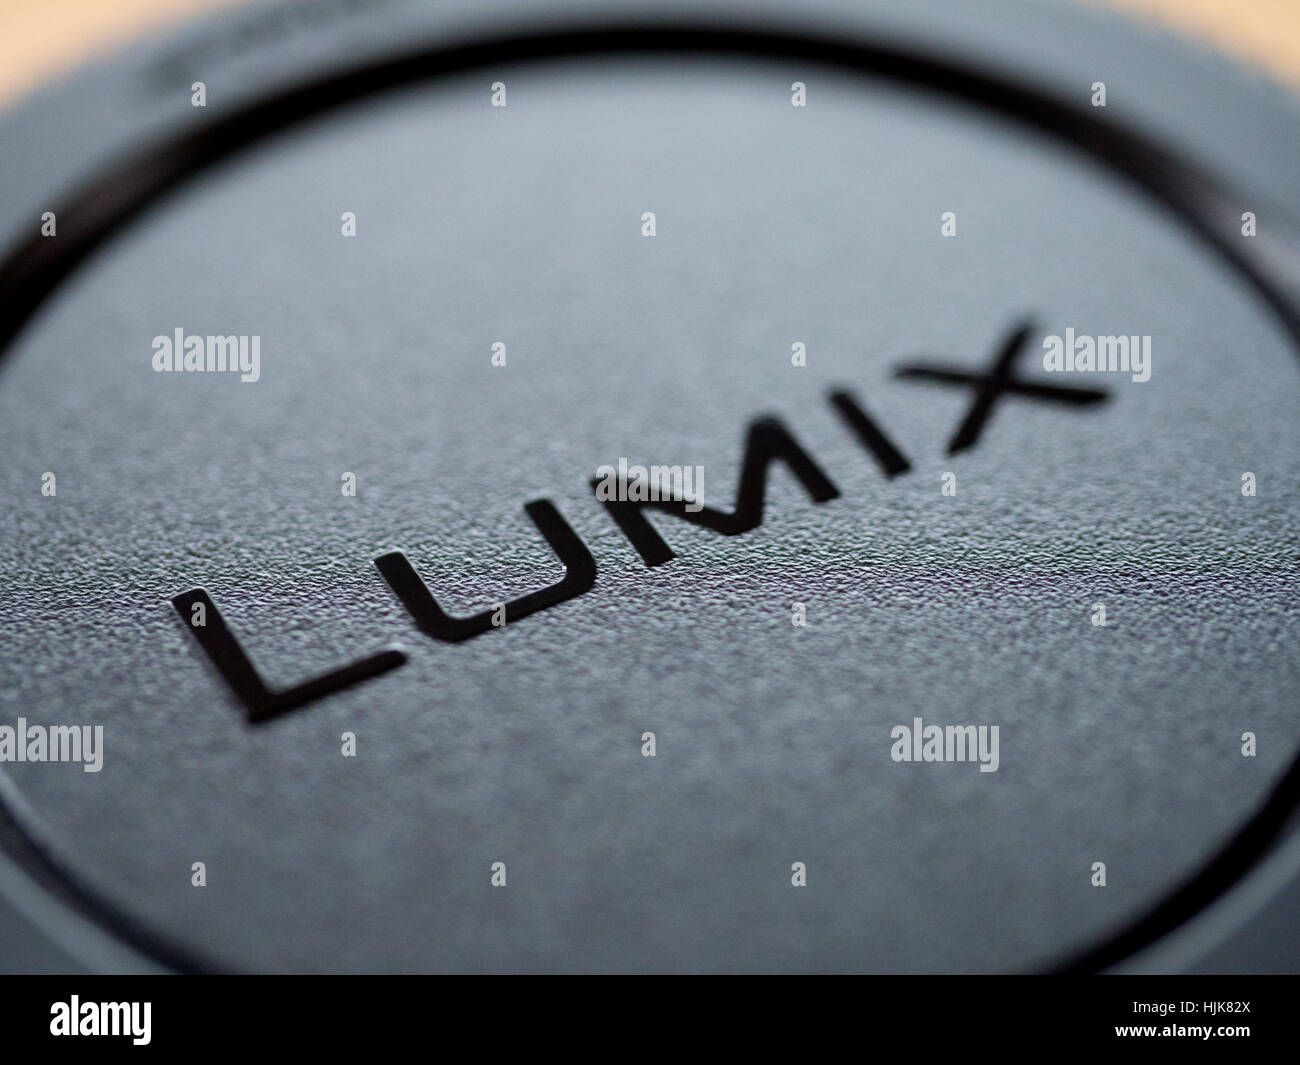 The word Lumix from a Panasonic Lumix lens cap Stock Photo